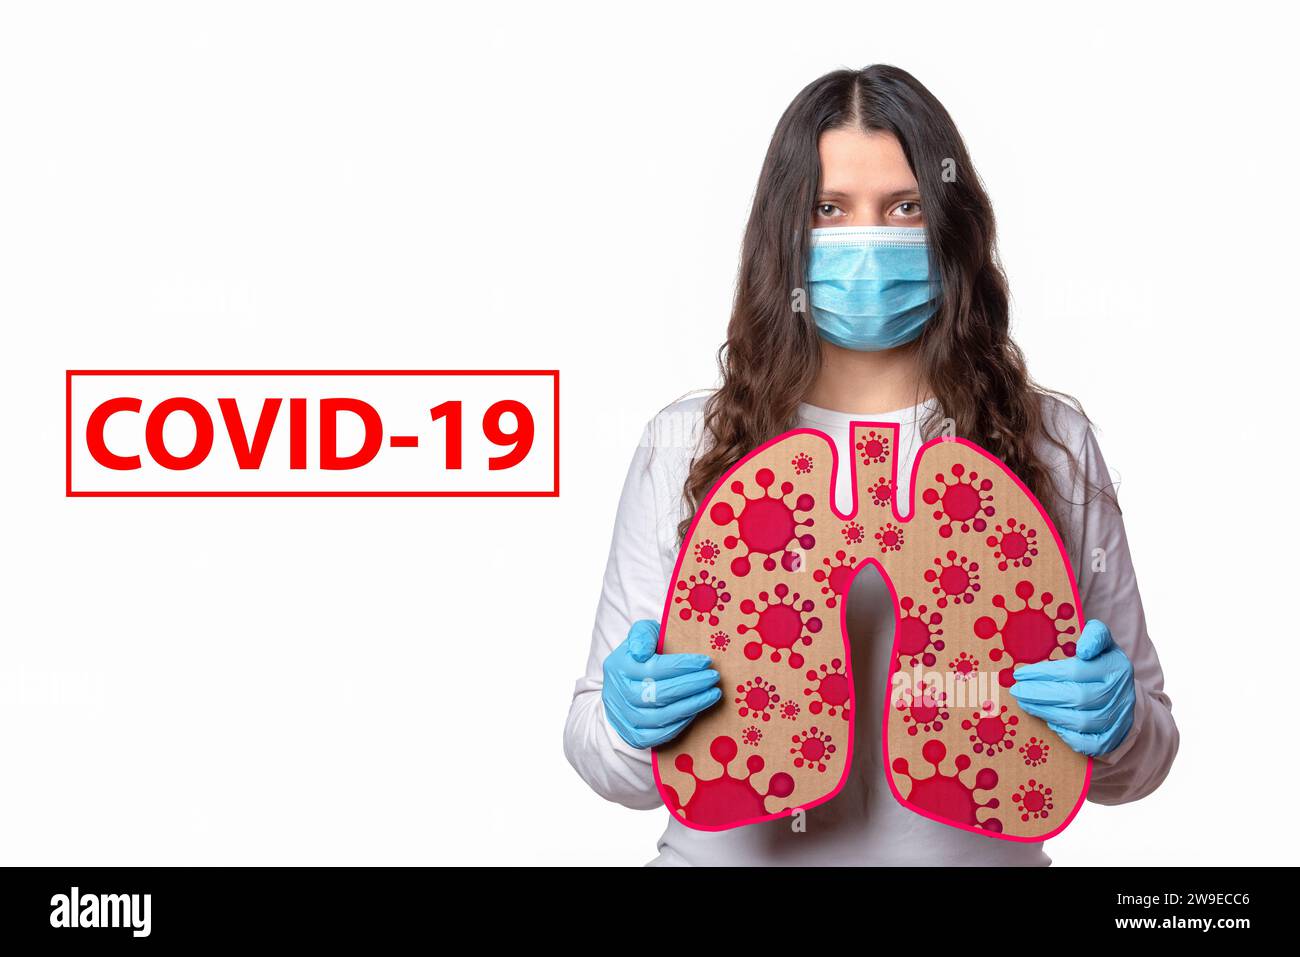 Il coronavirus COVID-19 infetta i polmoni con polmonite bilaterale. Ragazza in maschera protettiva tiene i polmoni con batteri SARS-CoV-2. Foto Stock